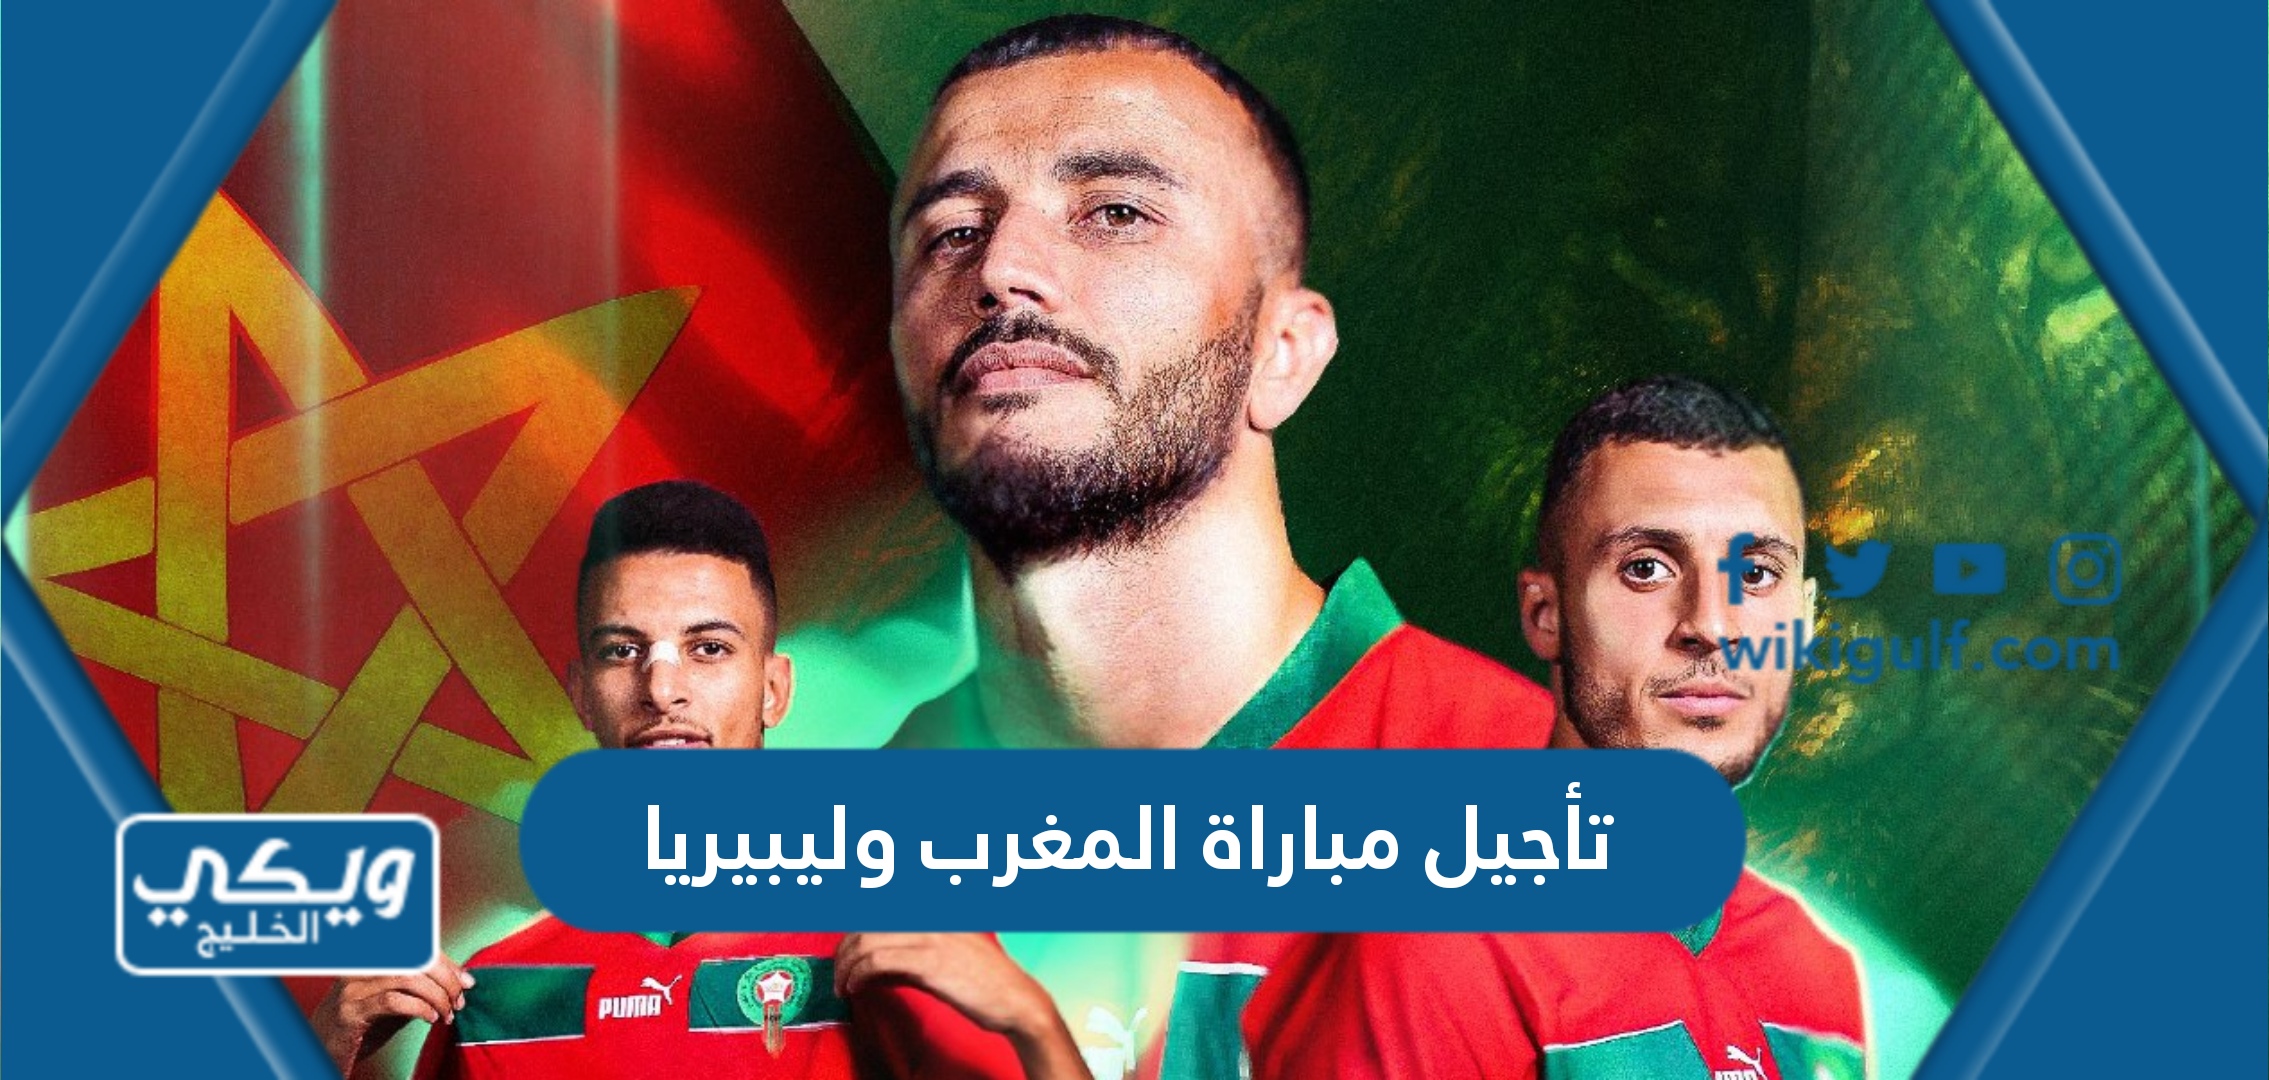 حقيقة تأجيل مباراة المغرب وليبيريا في تصفيات افريقيا بسبب الزلزال